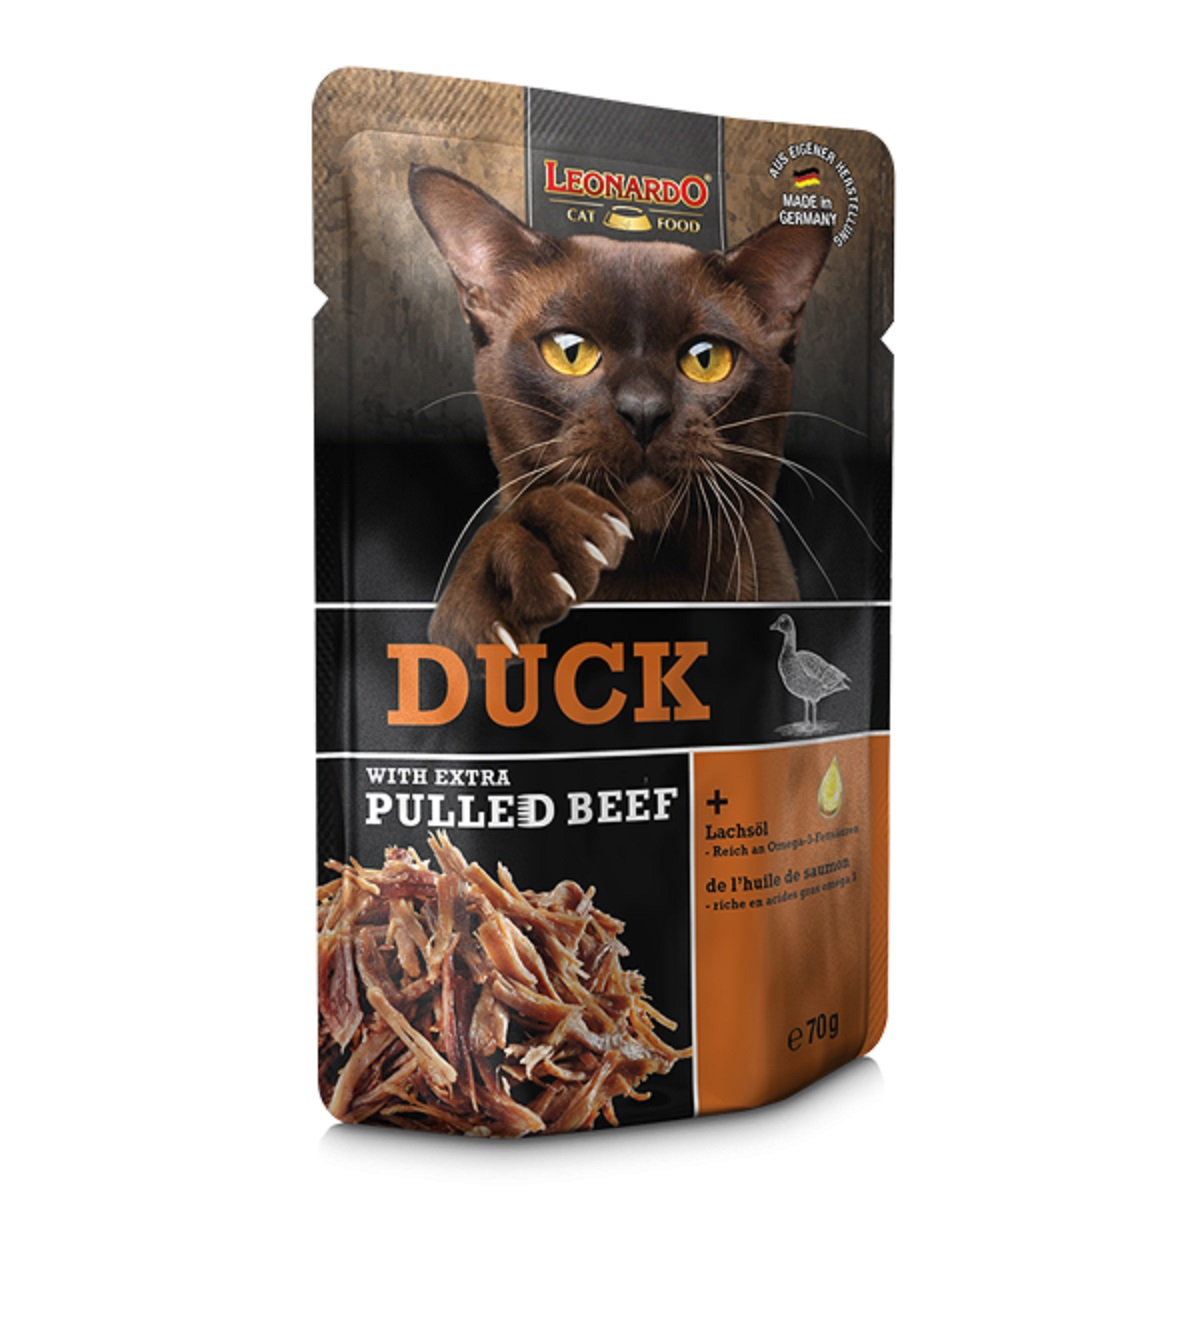 Leonardo + extra Pulled Beef Comida húmeda para gatos - varias recetas disponibles